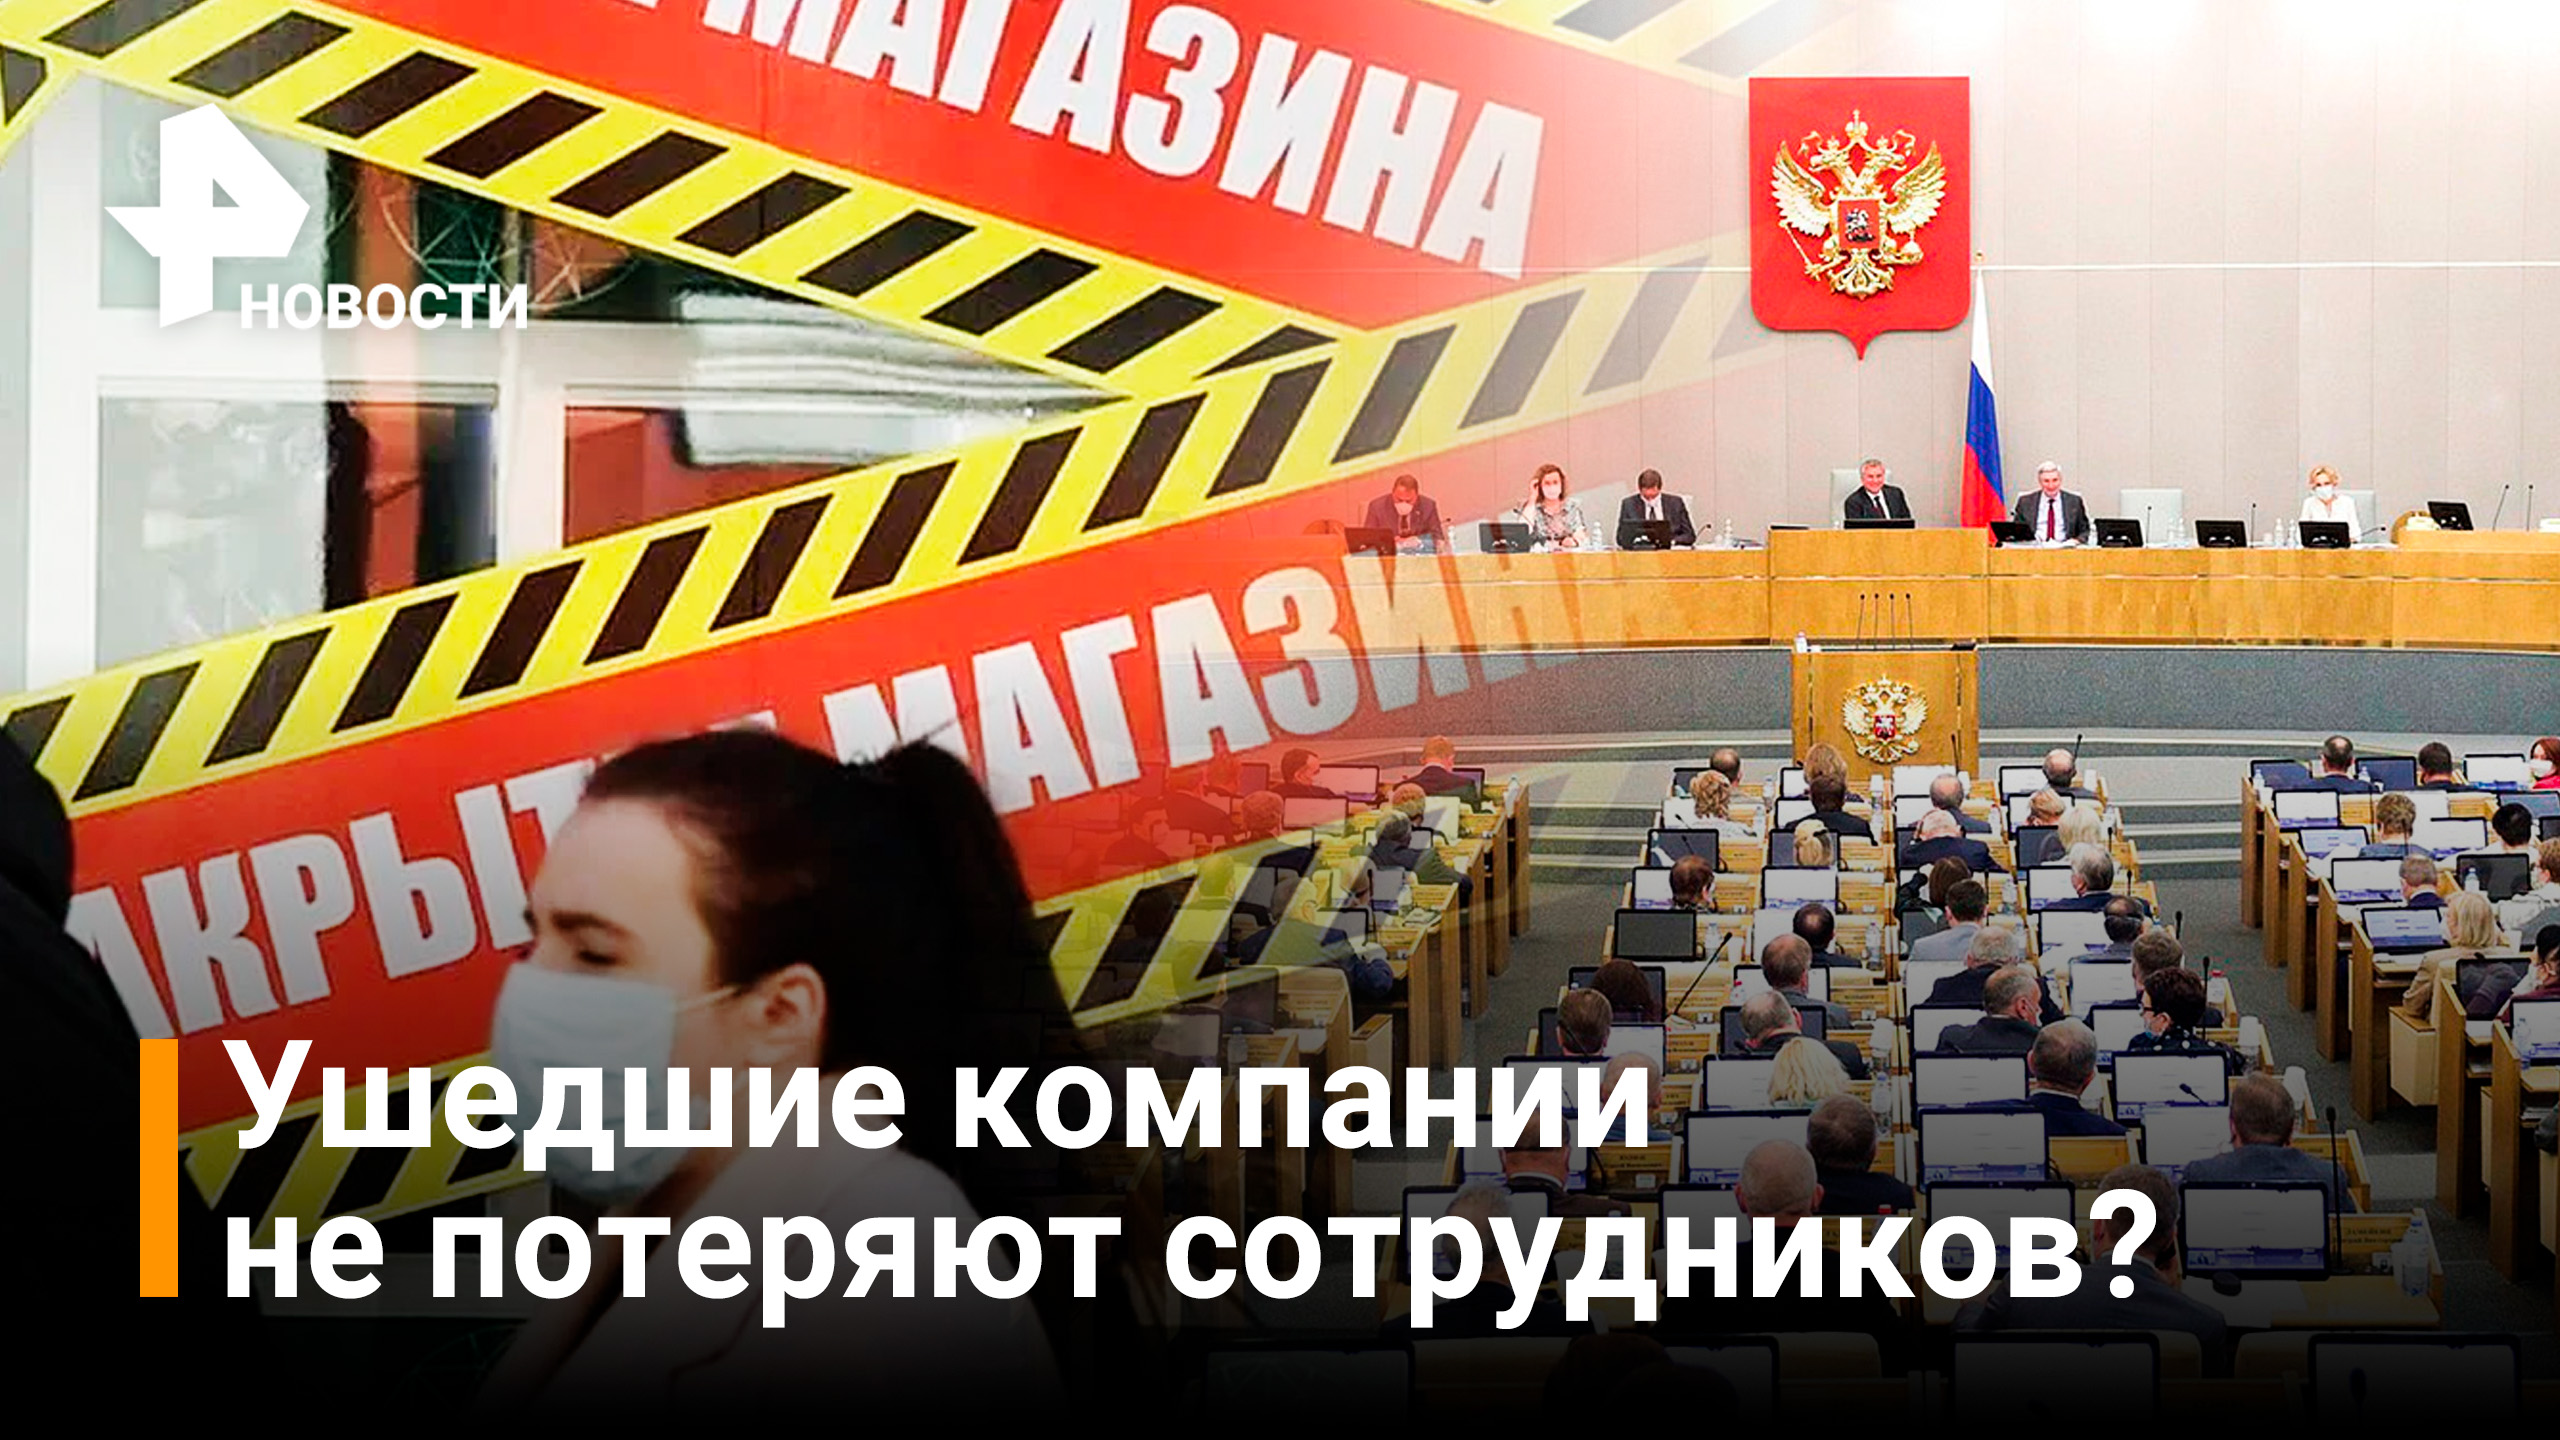 Законопроект о внешнем управлении ушедшими из РФ компаниями внесли в Госдуму / РЕН Новости